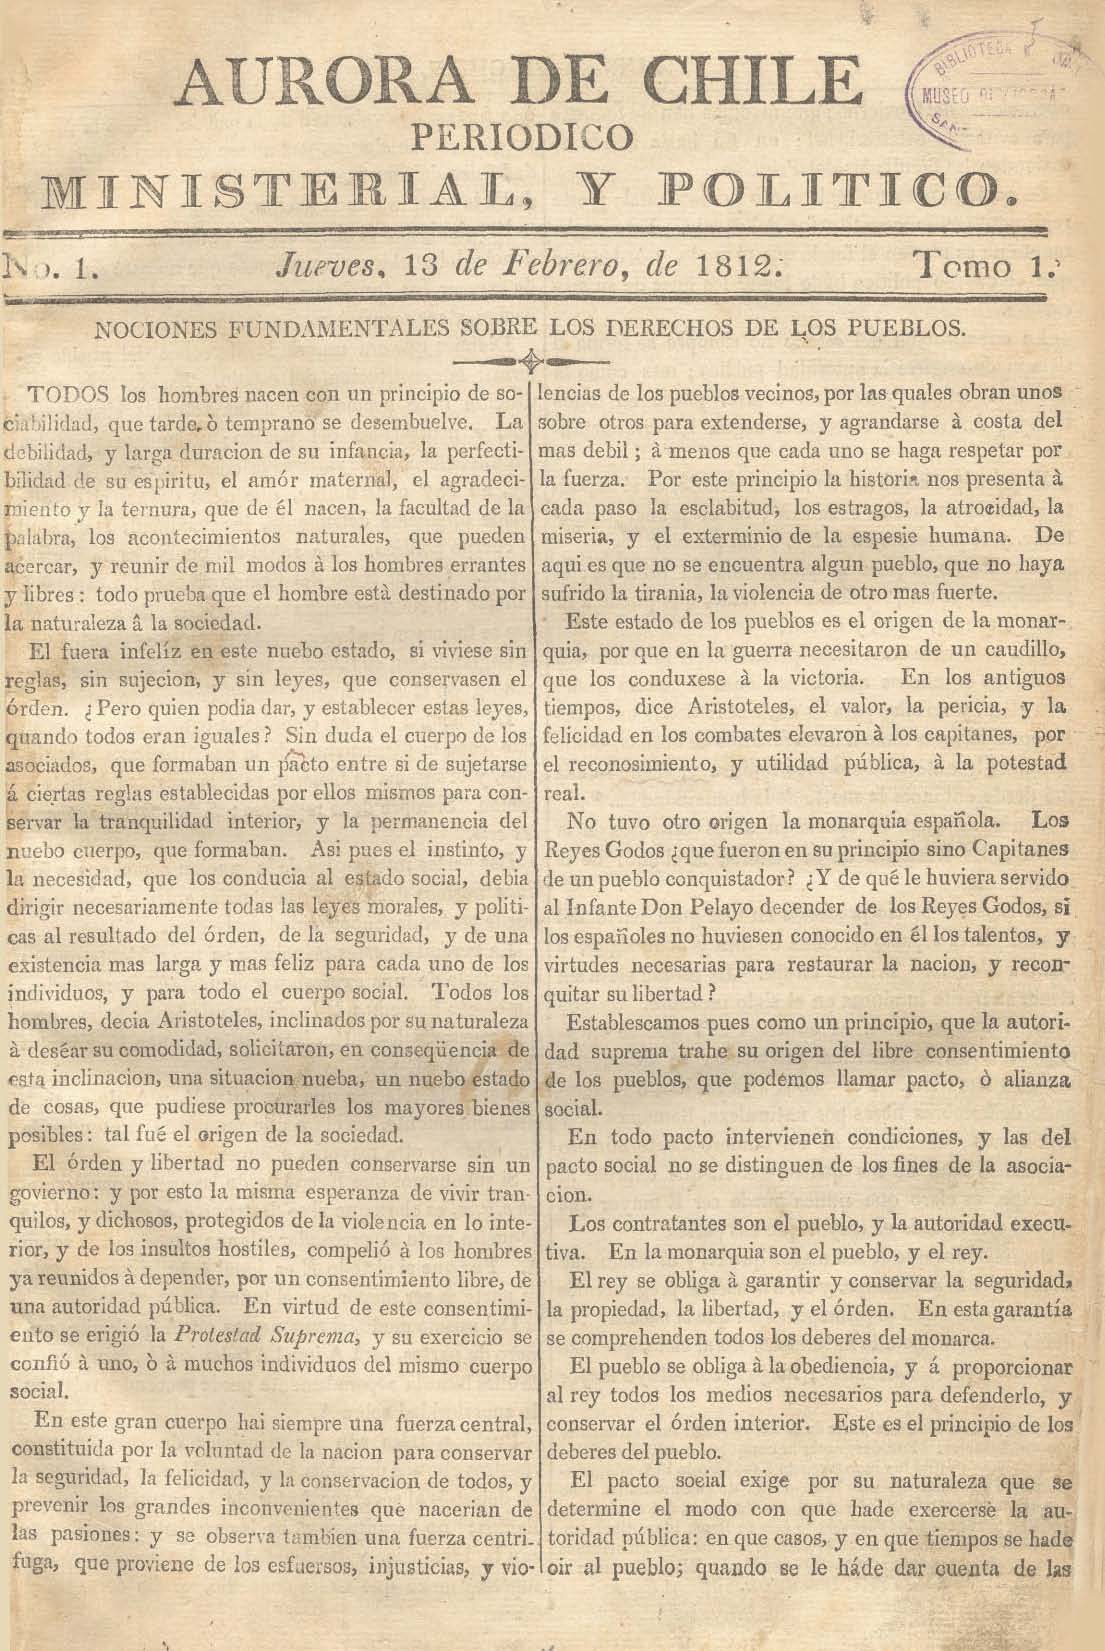 											Ver Núm. 1 (1813): Tomo II. Jueves 7 de Enero
										